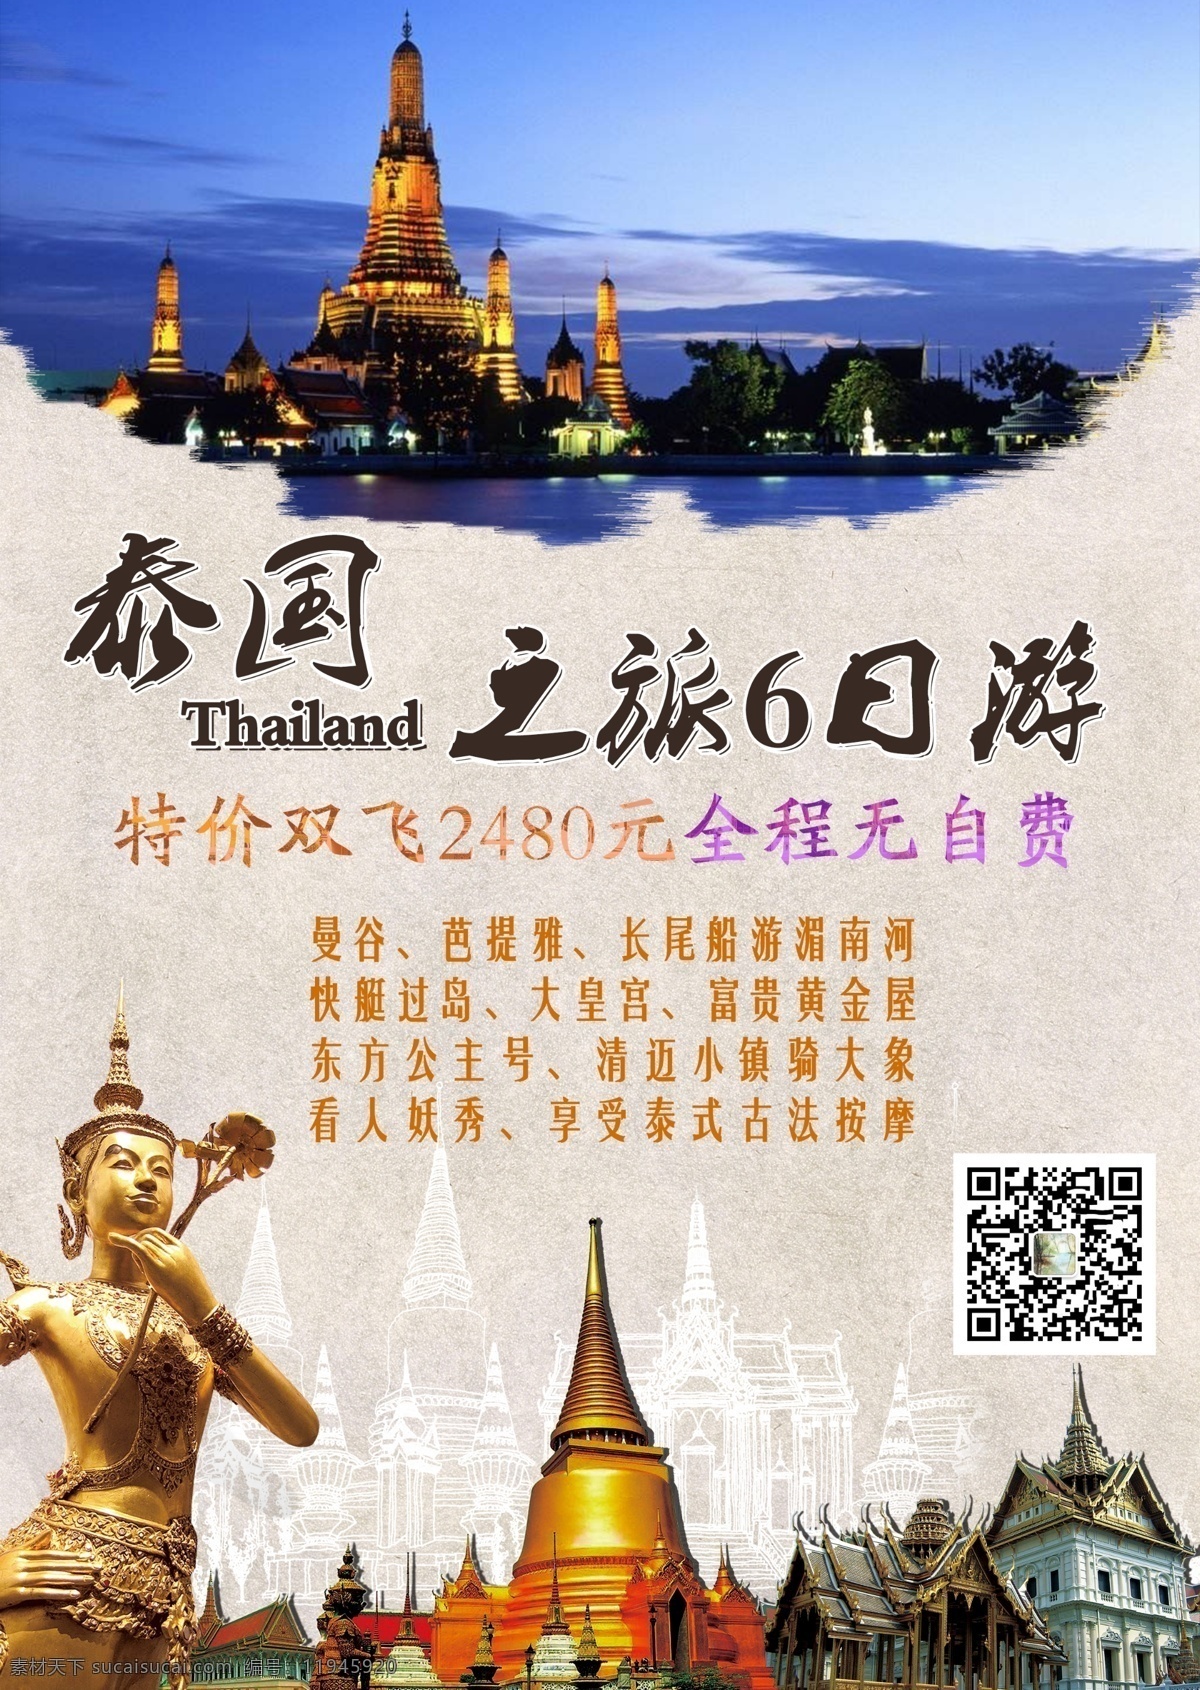 泰国旅游 泰国佛像 大皇宫 泰国建筑 泰国夜景 泰国寺庙 旅游宣传图片